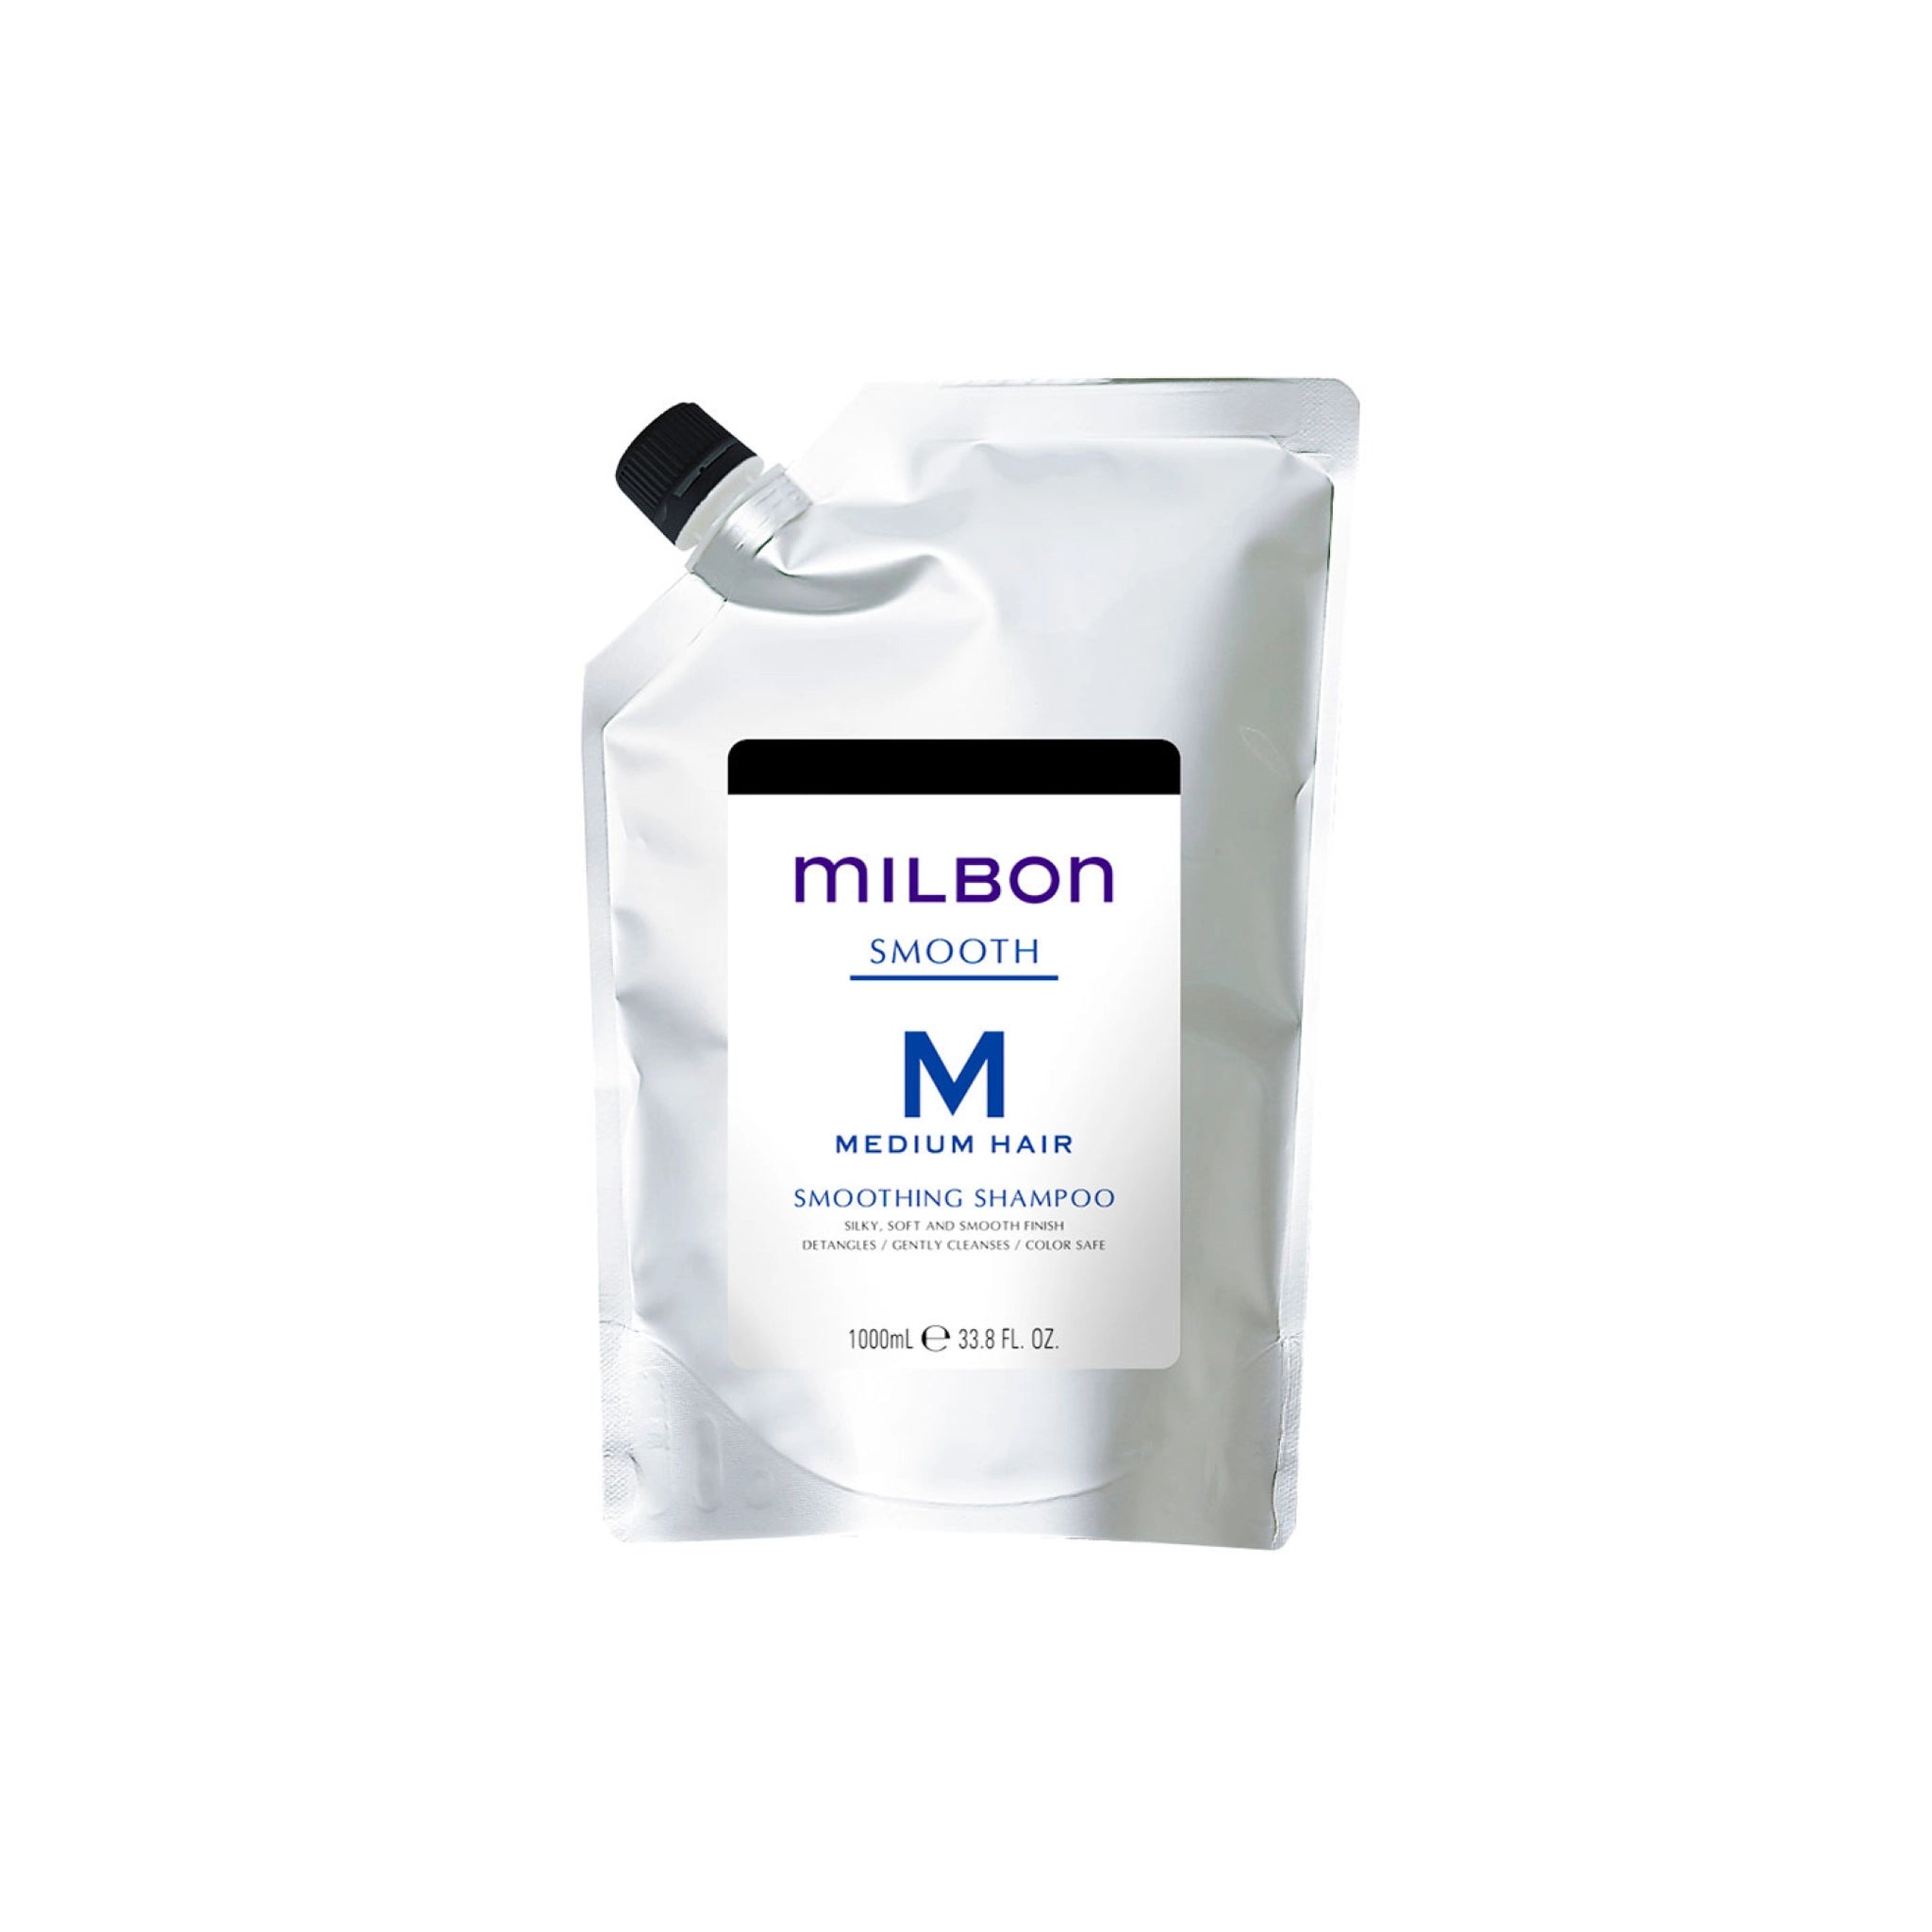 Milbon Smooth Smoothing Shampoo Medium Hair 33.8 oz refill – Shampoo Zone